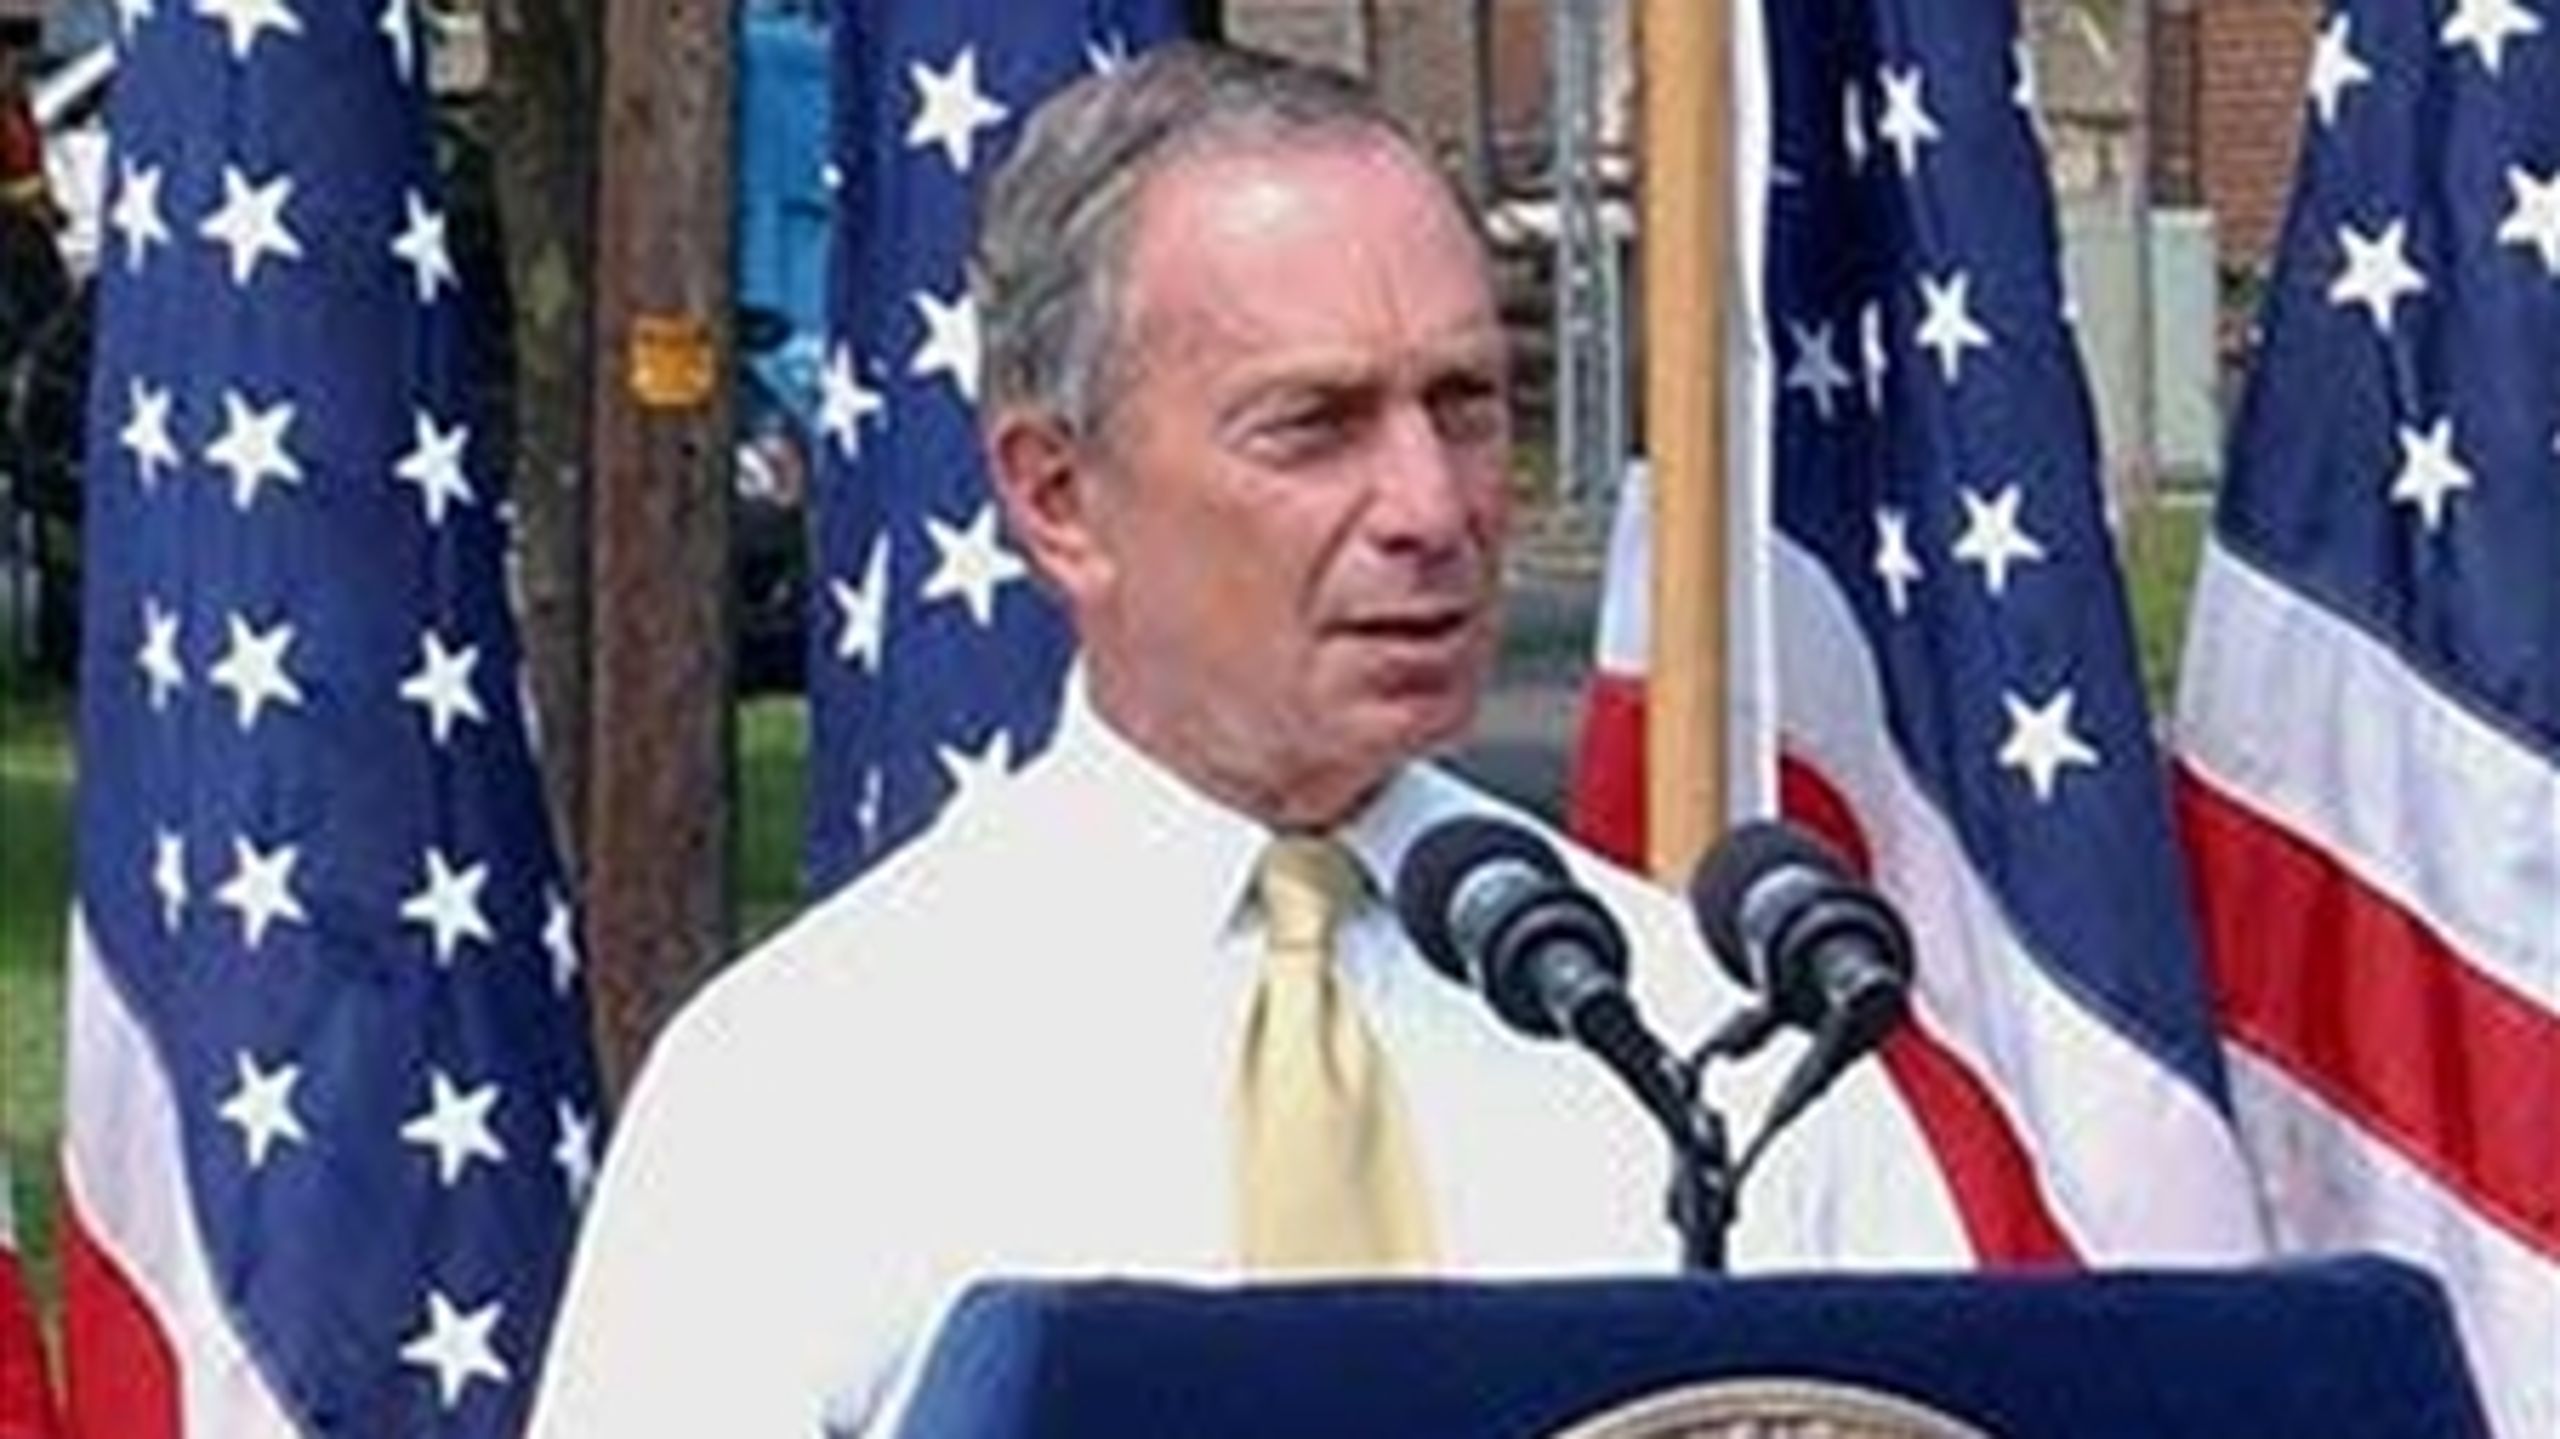 Michael Bloomberg, borgmester i New York,  er en af de mest kendte amerikanske borgmestre. Han falder for tidsgrænsen, som forhindrer ham i at genopstille til endnu en periode.